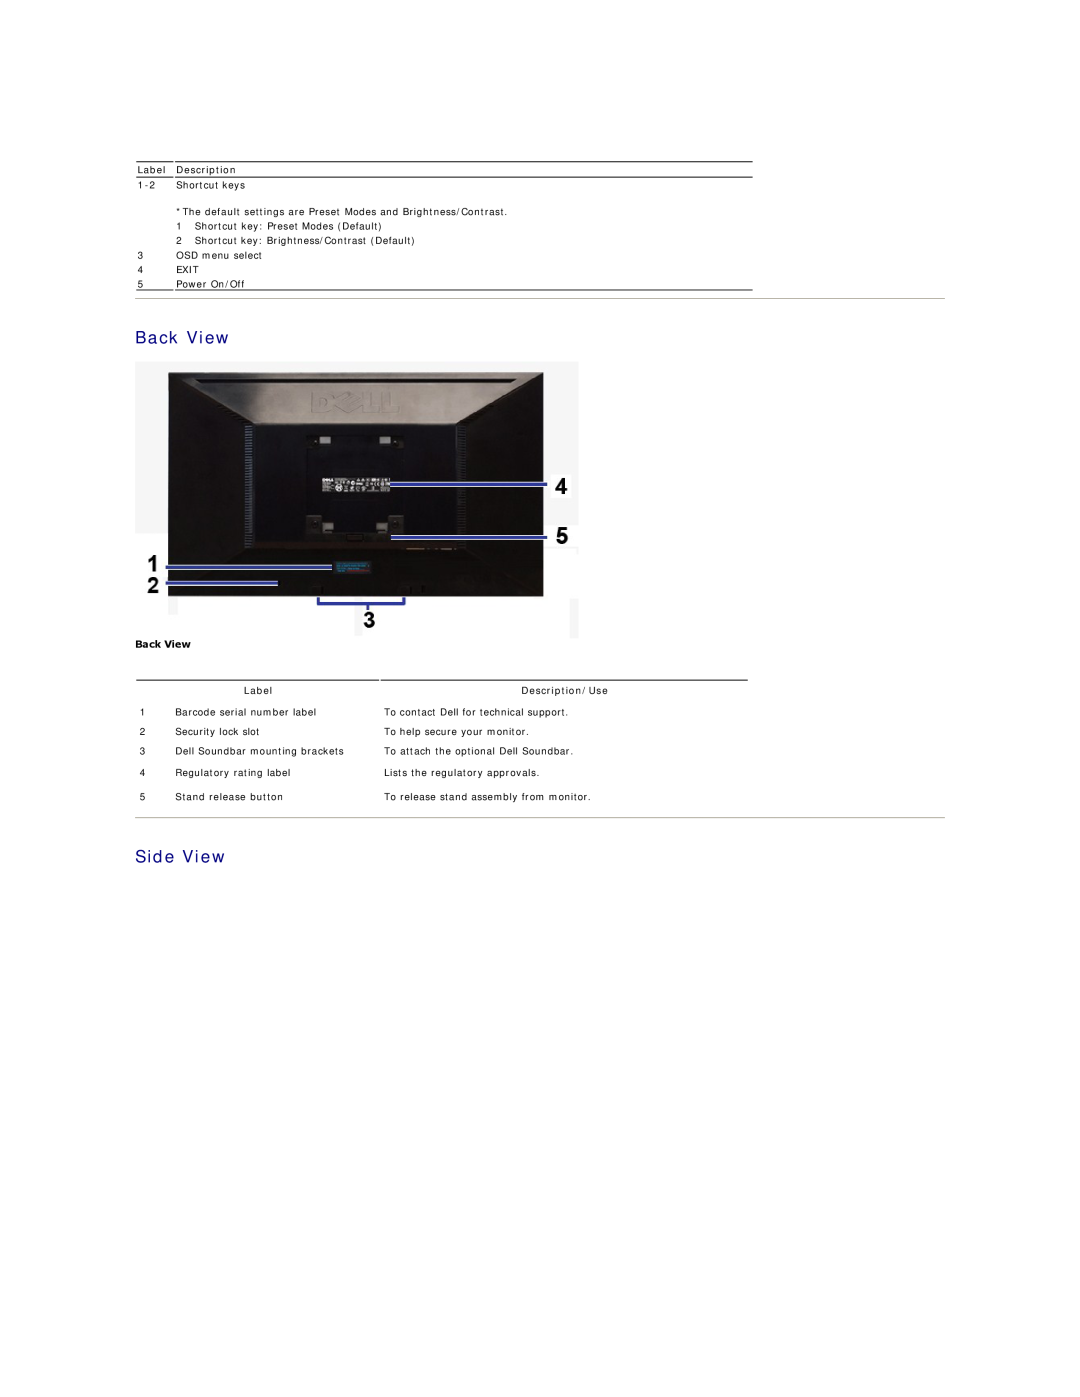 Dell IN2020F, IN2020MF appendix Back View, Side View, Label Description, Description/Use 